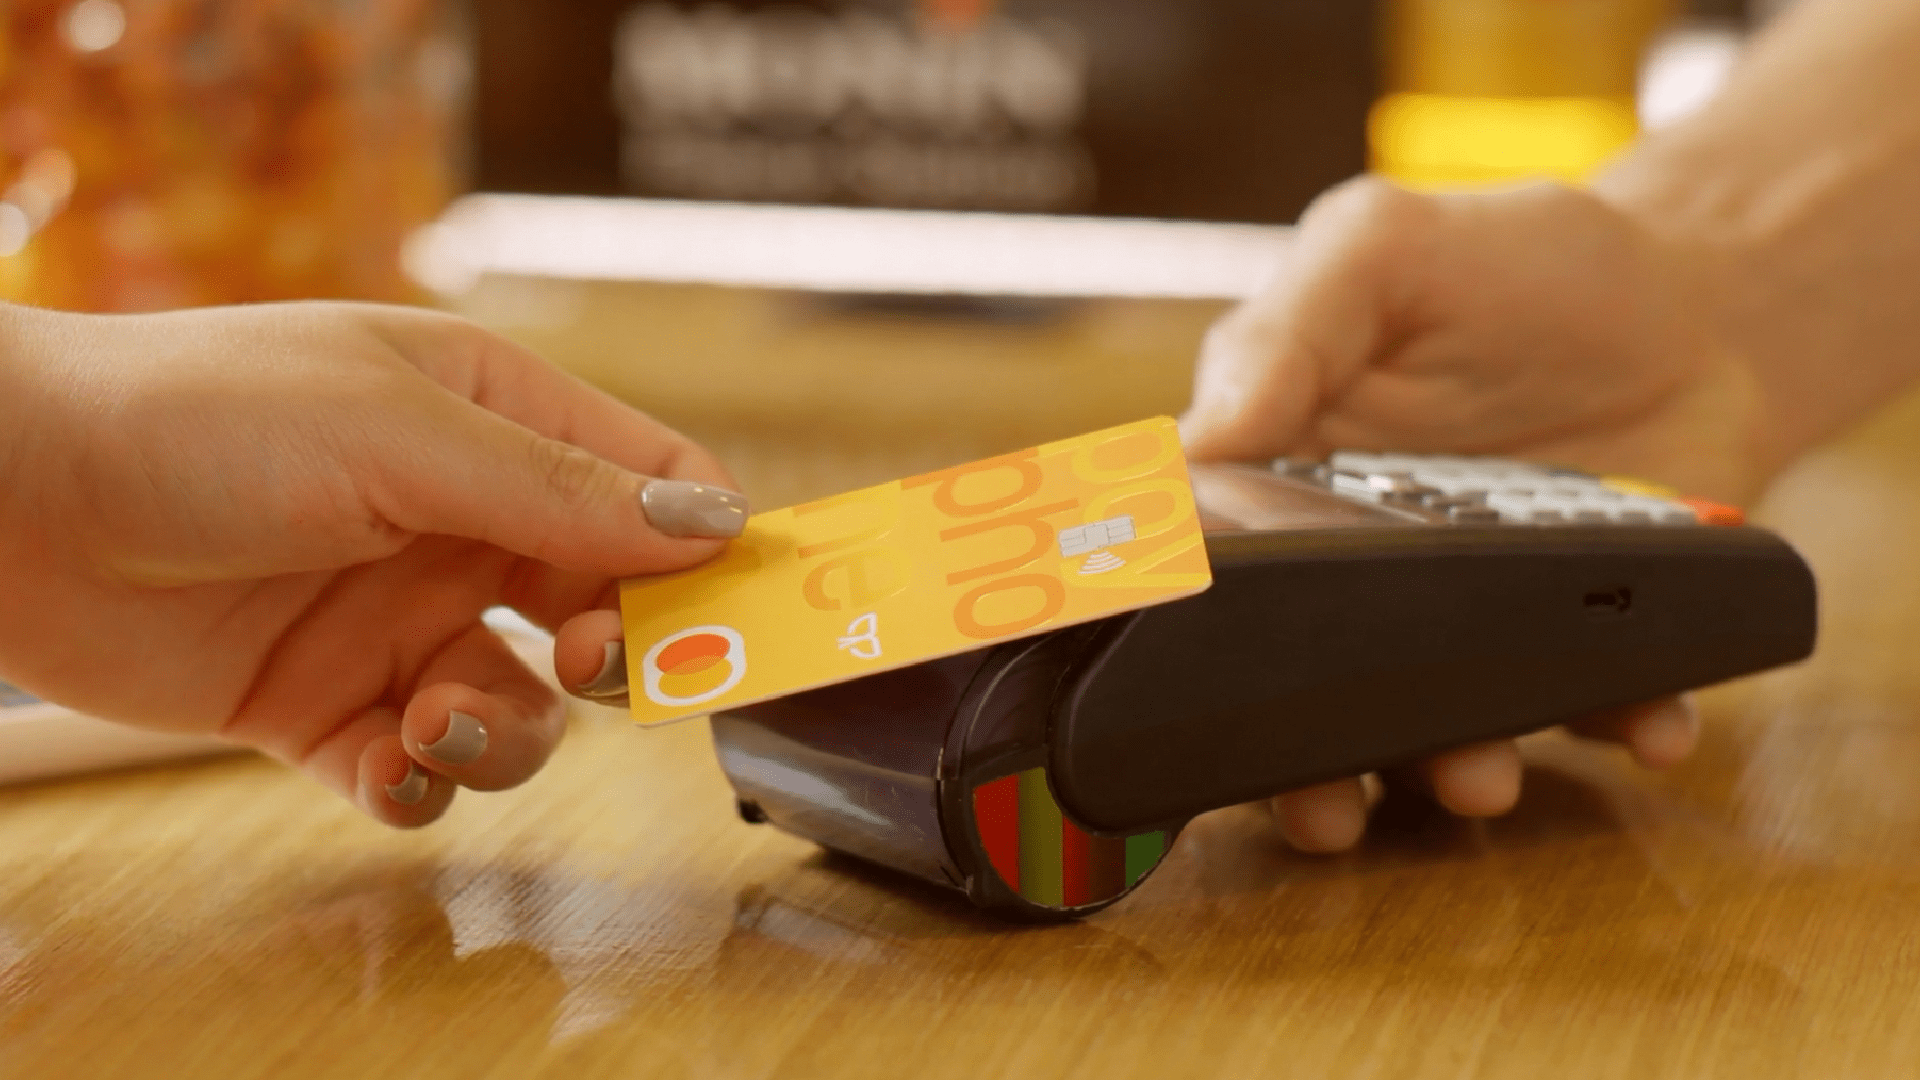 Tarjeta recargable Mastercard Payphone, con destacada aceptación